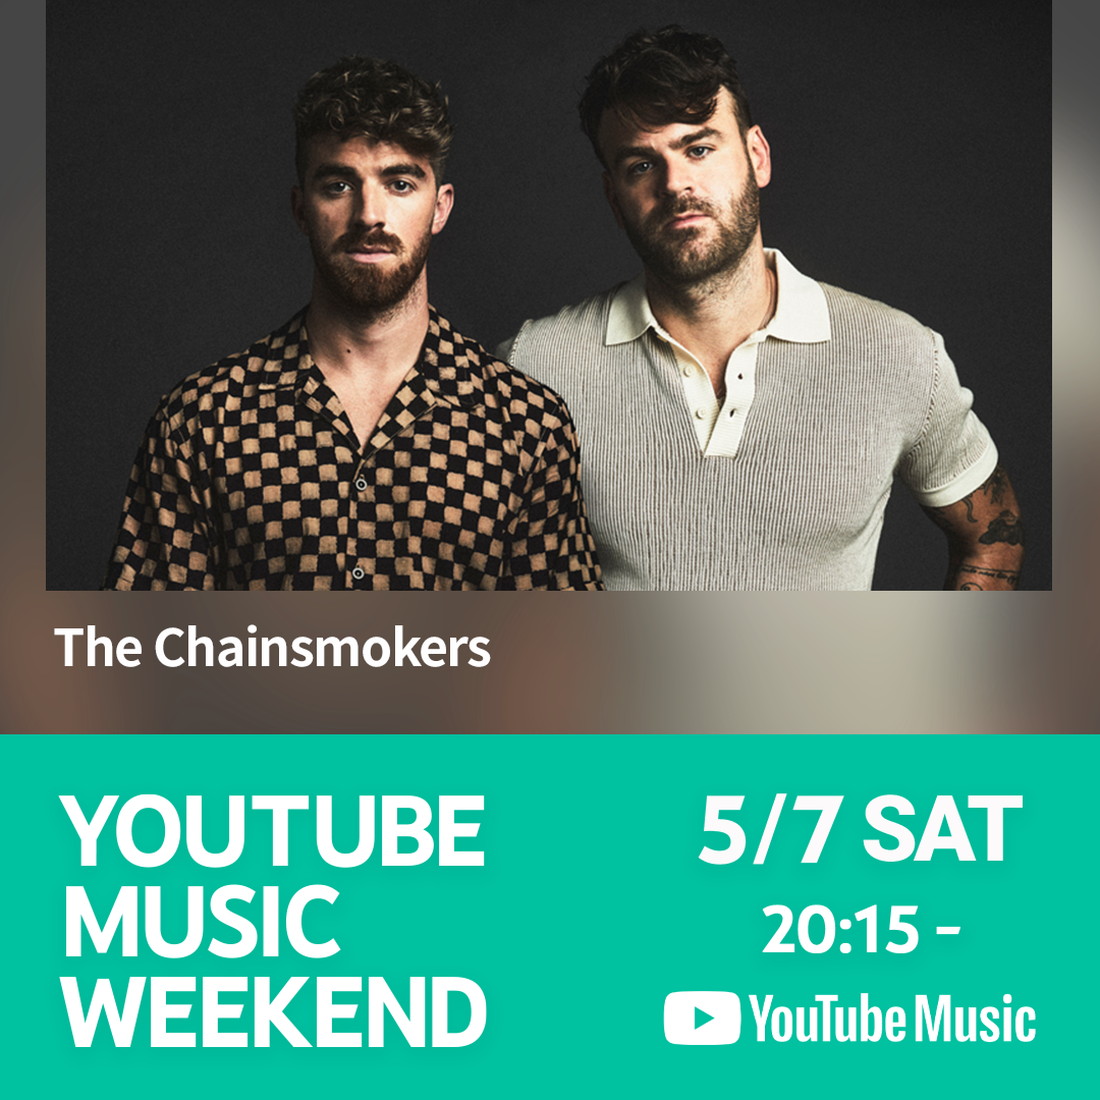 ザ・チェインスモーカーズ、『YouTube Music Weekend vol.5』プレミア公開の予約設定スタート